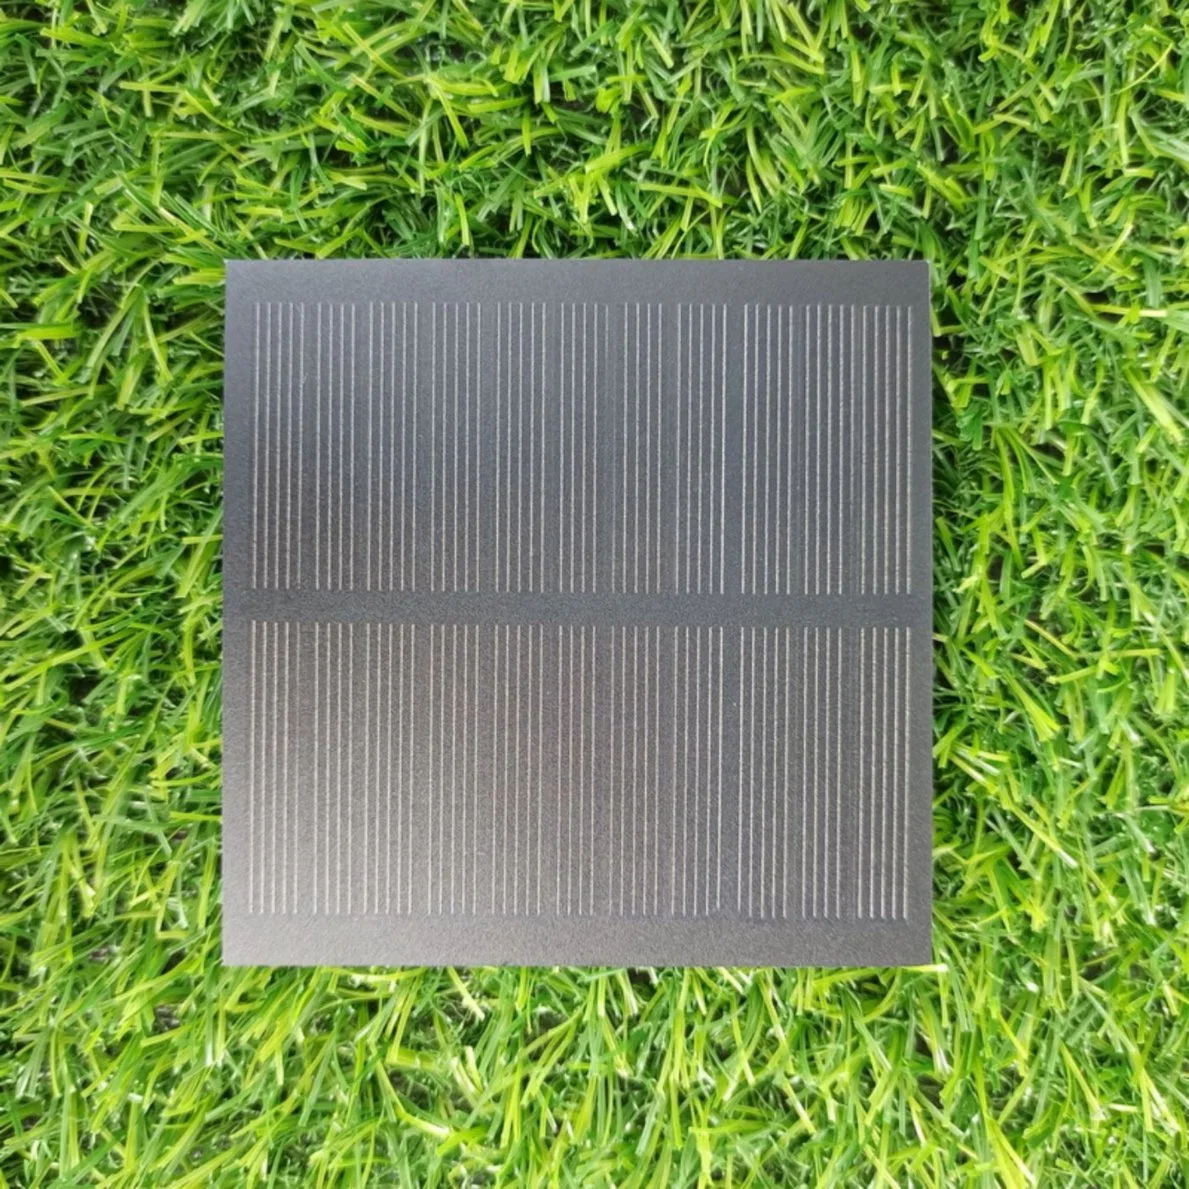 جولة مخصصة لوحدة Pet ETFE Glass Mono Silicon PV النمطية القابلة للنقل أشكال لوحات شمسية صغيرة الحجم متجمدة 5 فولت 6 فولت 9 فولت 12 فولت، 200 مللي أمبير، 450 مللي أمبير لشاحن البطارية 18650